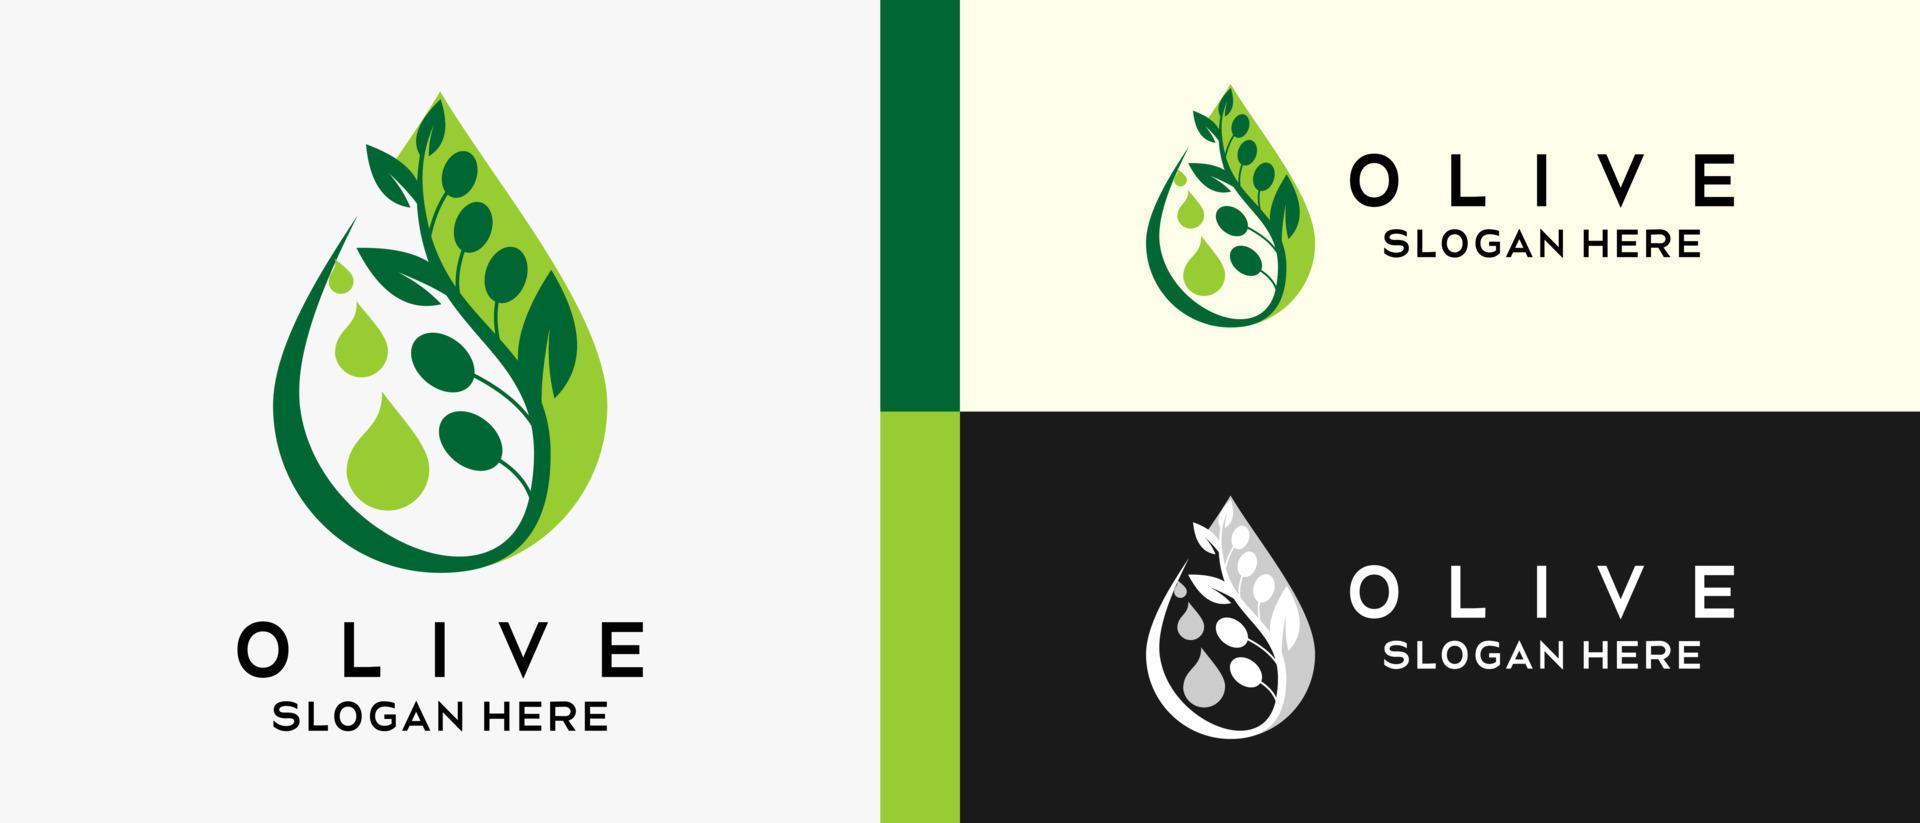 modèle de conception de logo olive avec silhouette en goutte à goutte créative. vecteur d'illustration logo olive premium